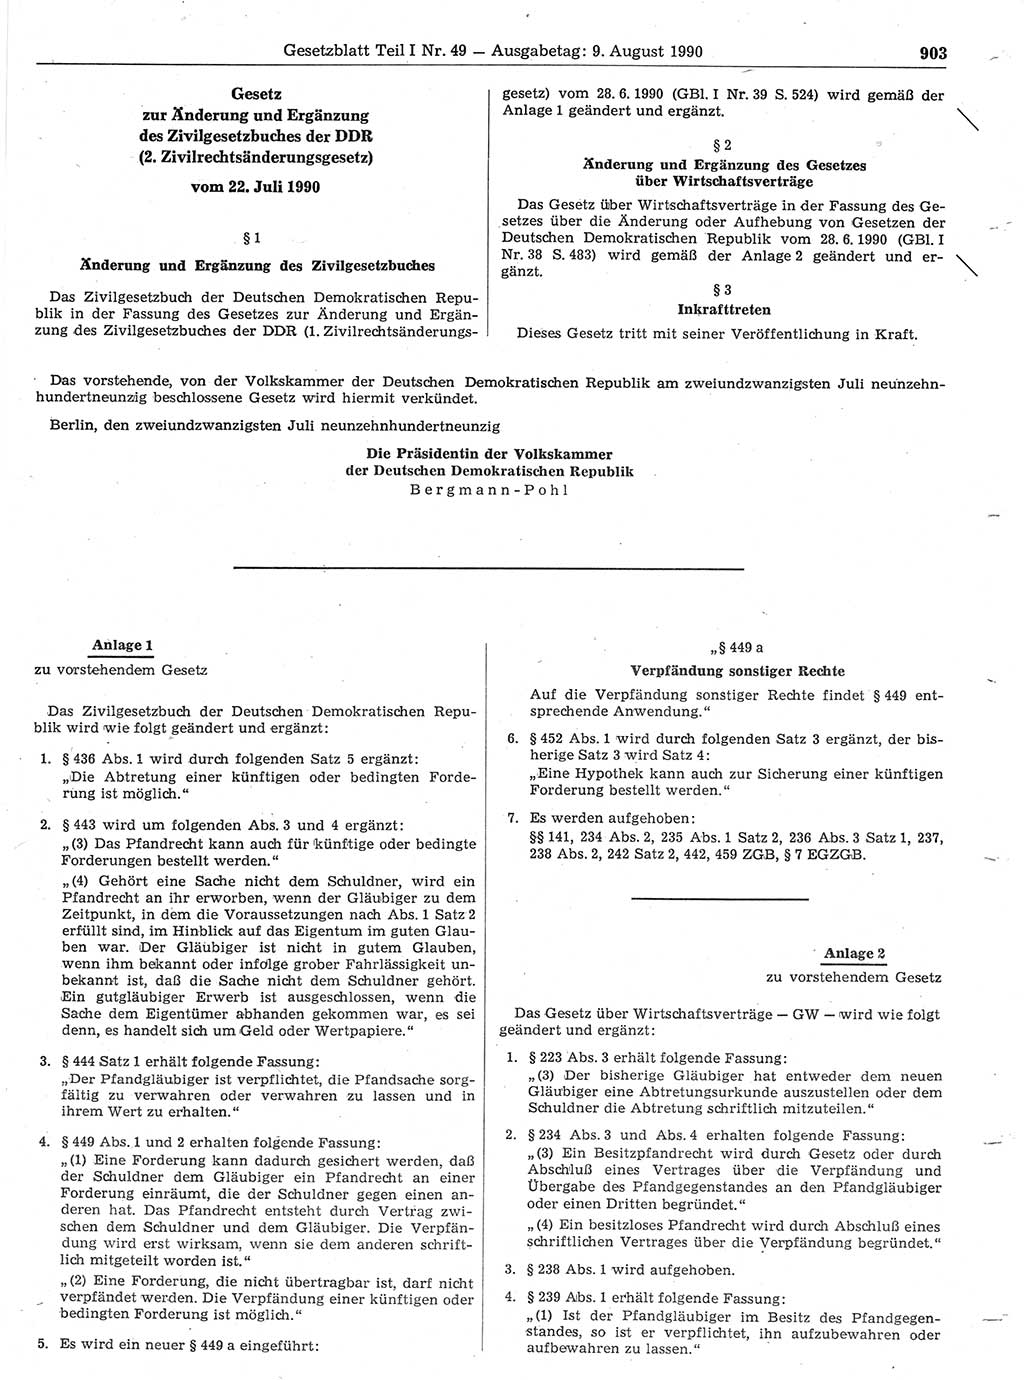 Gesetzblatt (GBl.) der Deutschen Demokratischen Republik (DDR) Teil Ⅰ 1990, Seite 903 (GBl. DDR Ⅰ 1990, S. 903)